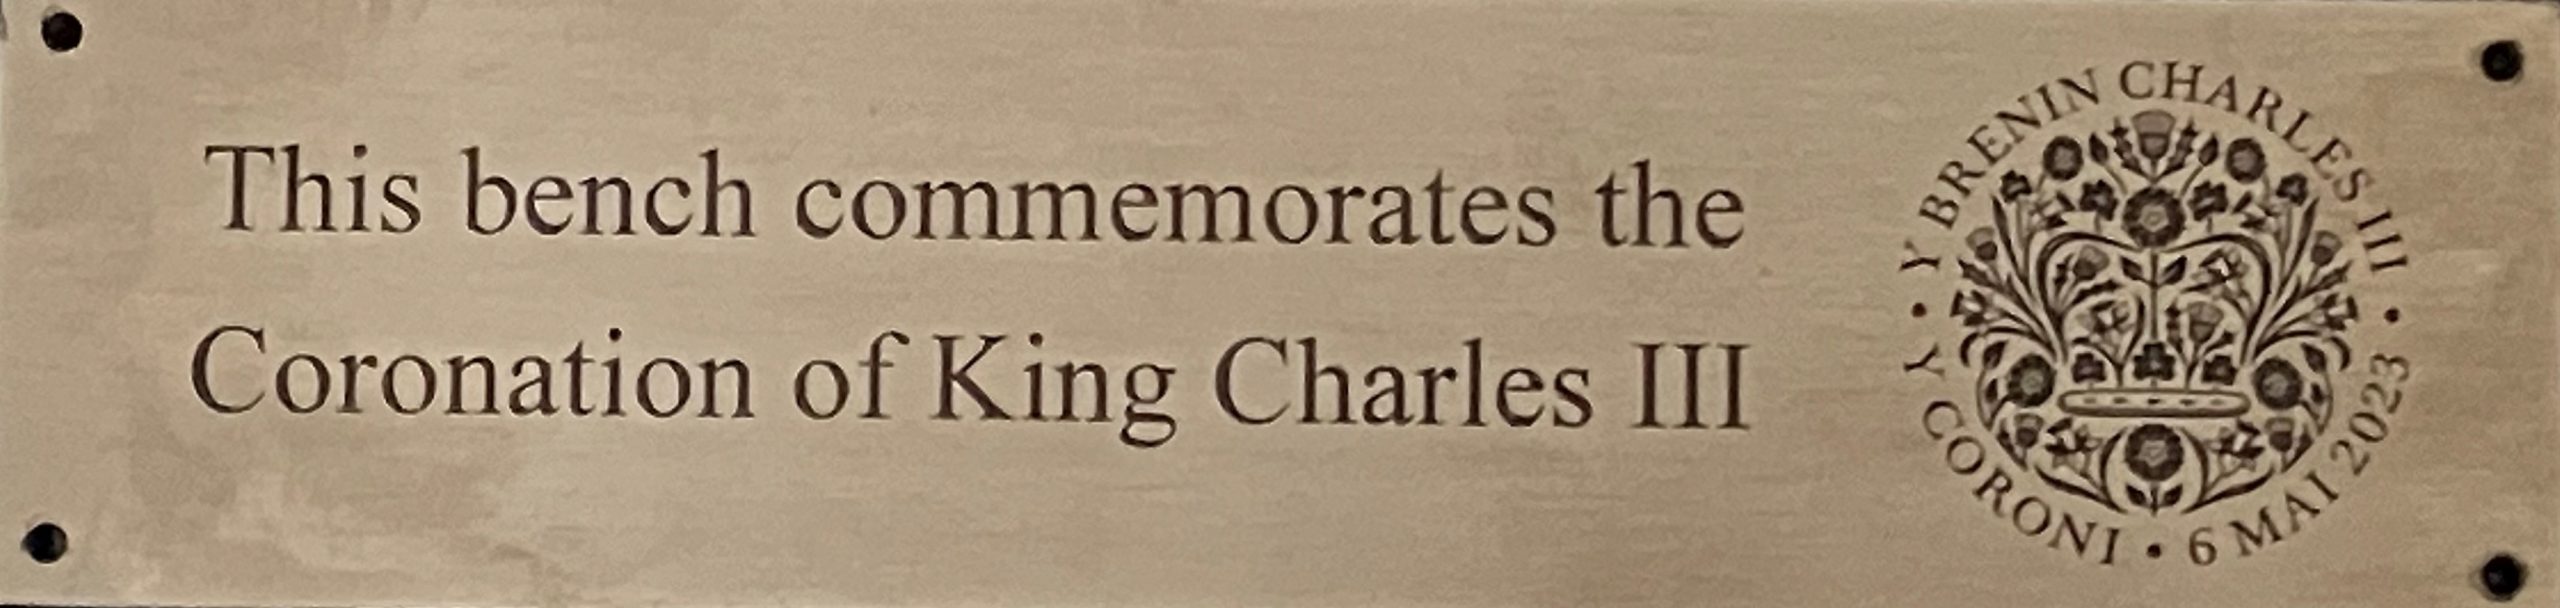 King Charles III coronation plaque